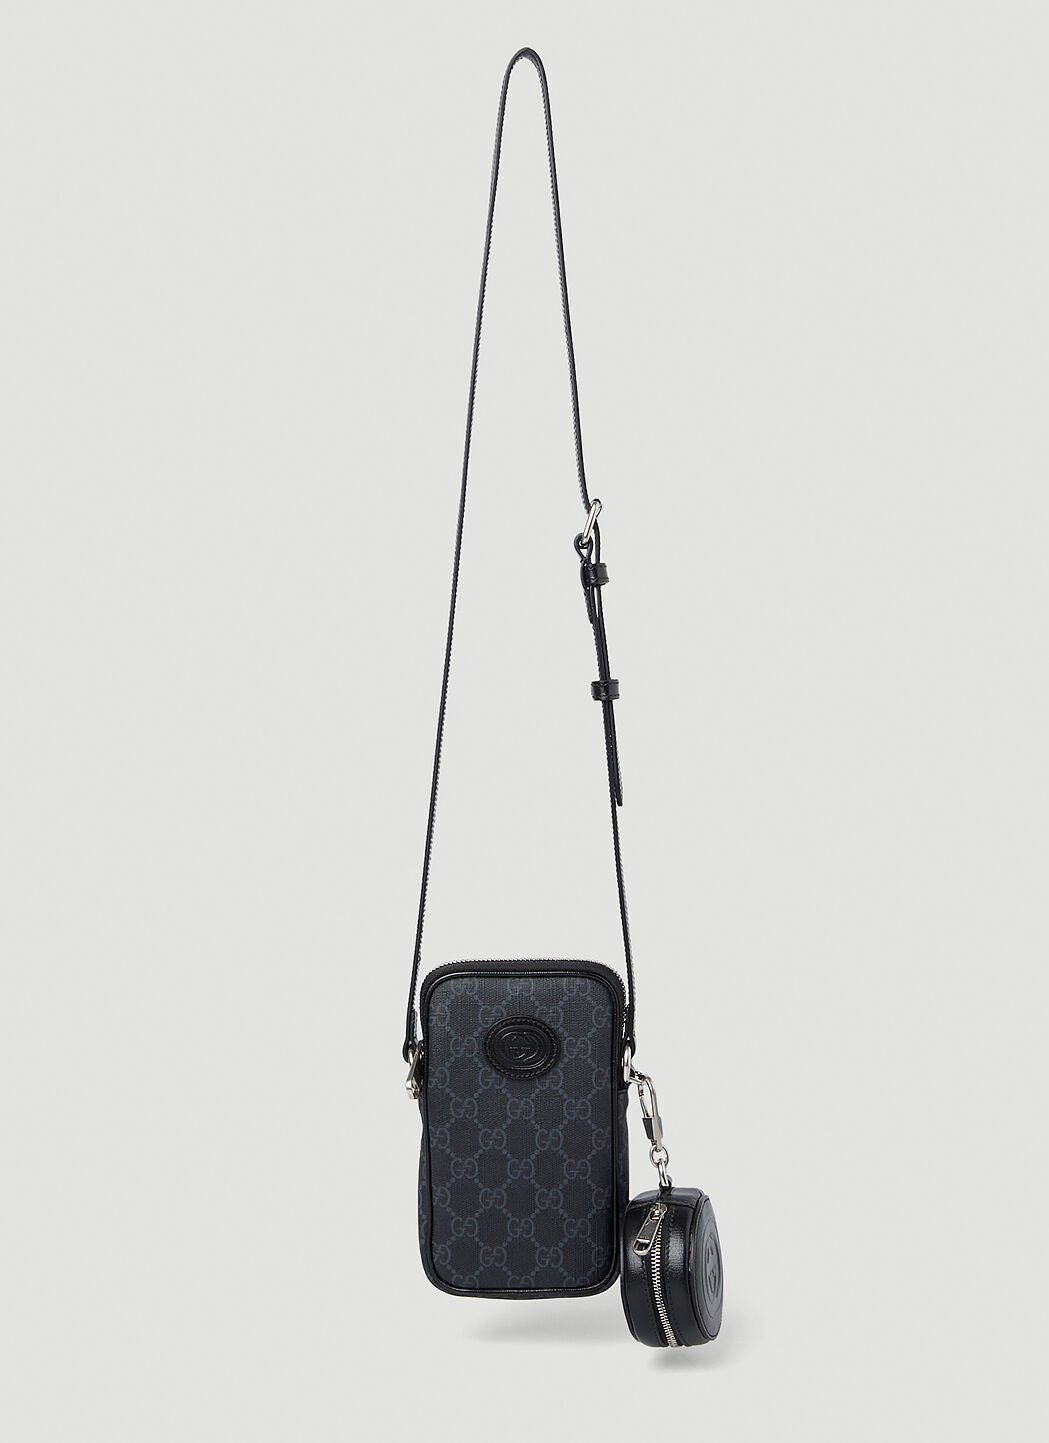 Gucci Retro GG Supreme Crossbody Bag Black guc0250066